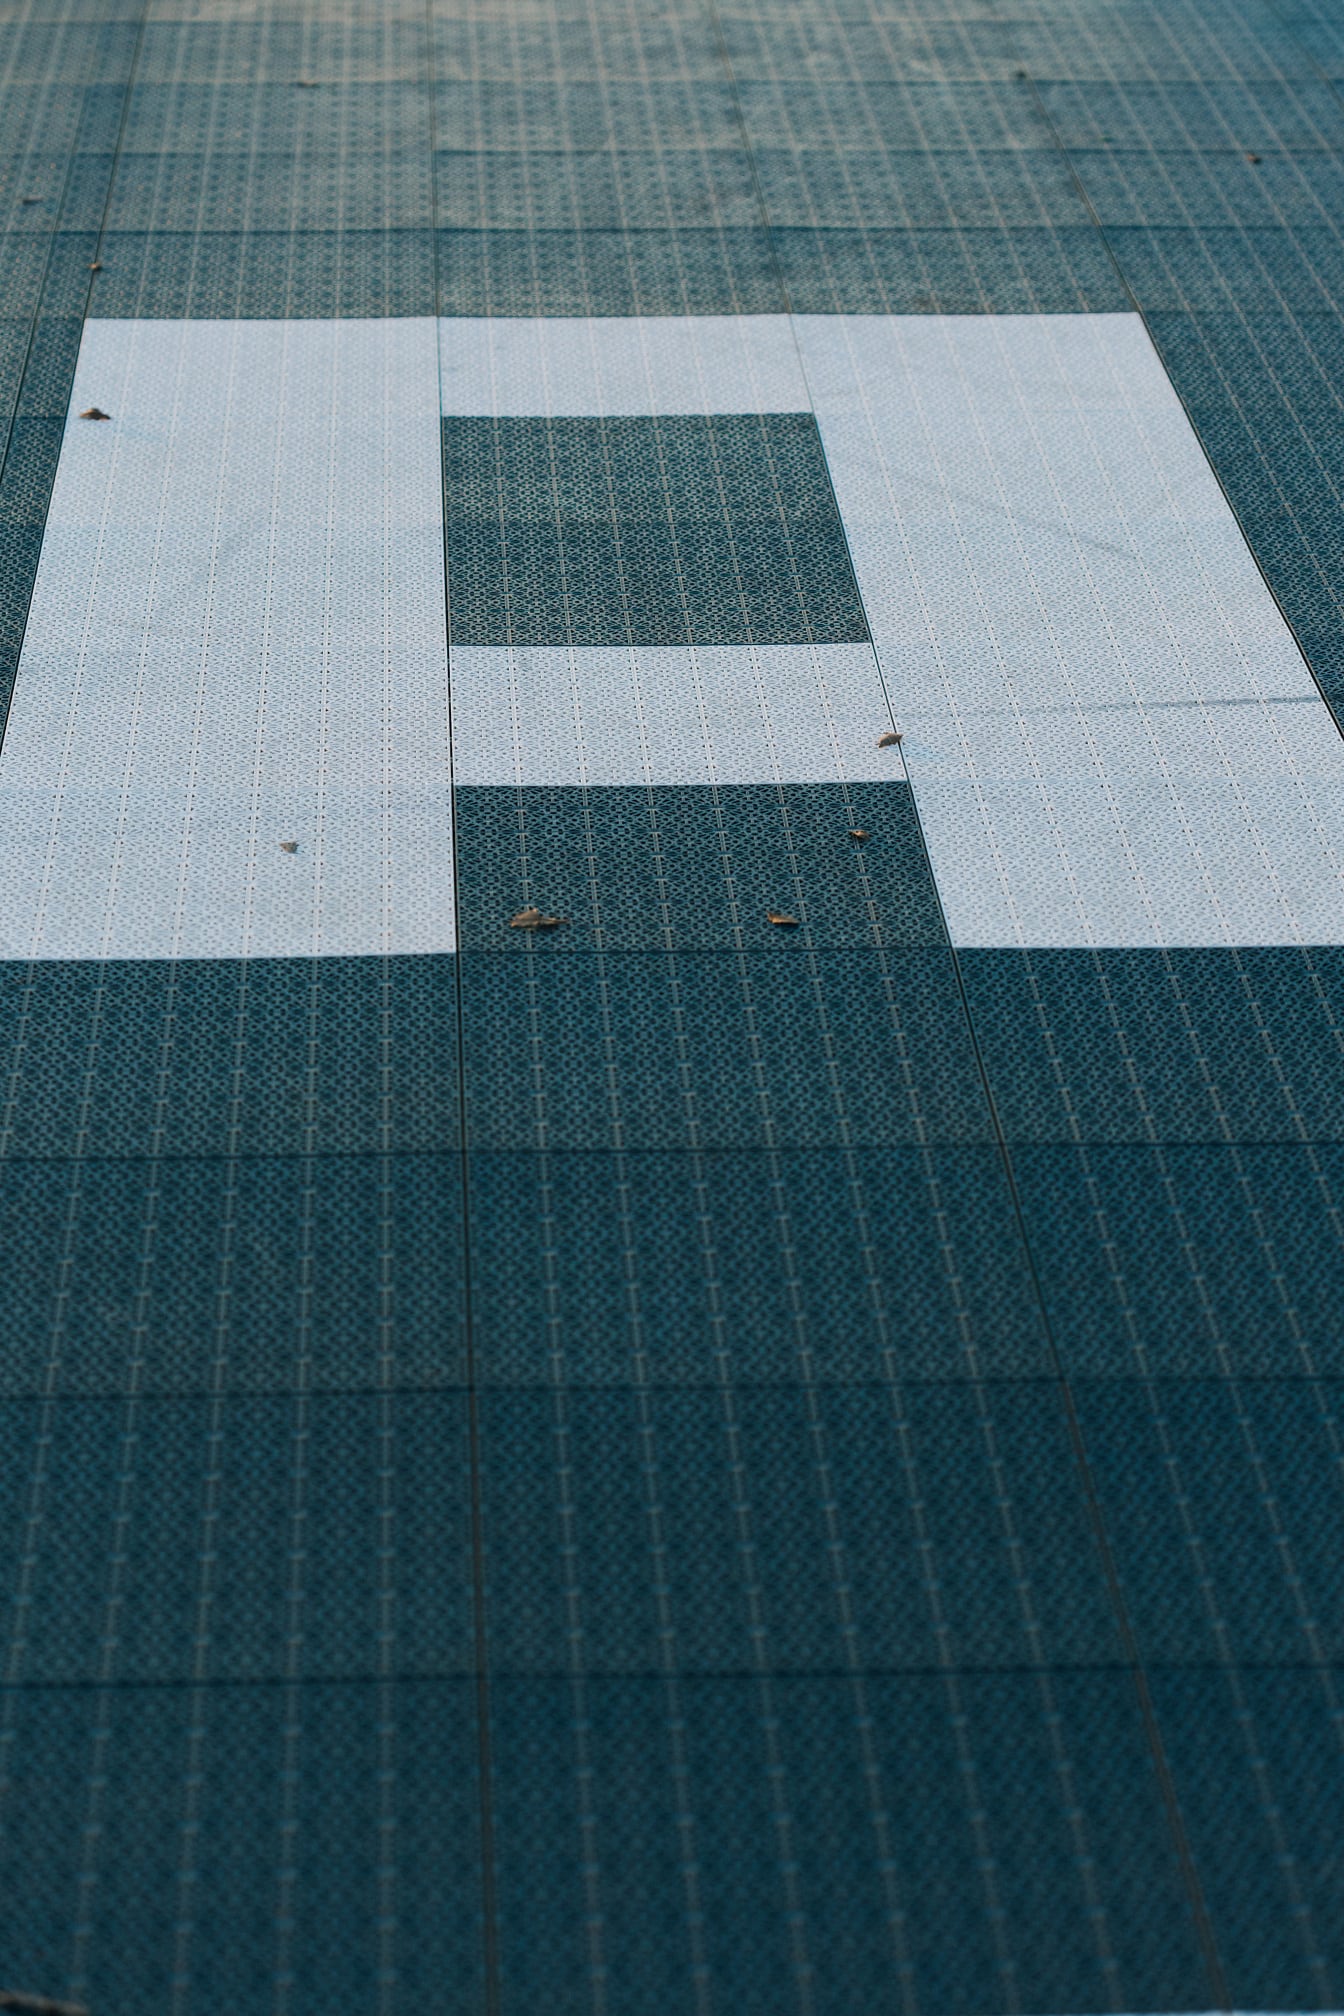 Detail dopisu (A) na podlaze s geometrickým plastickým vzorem